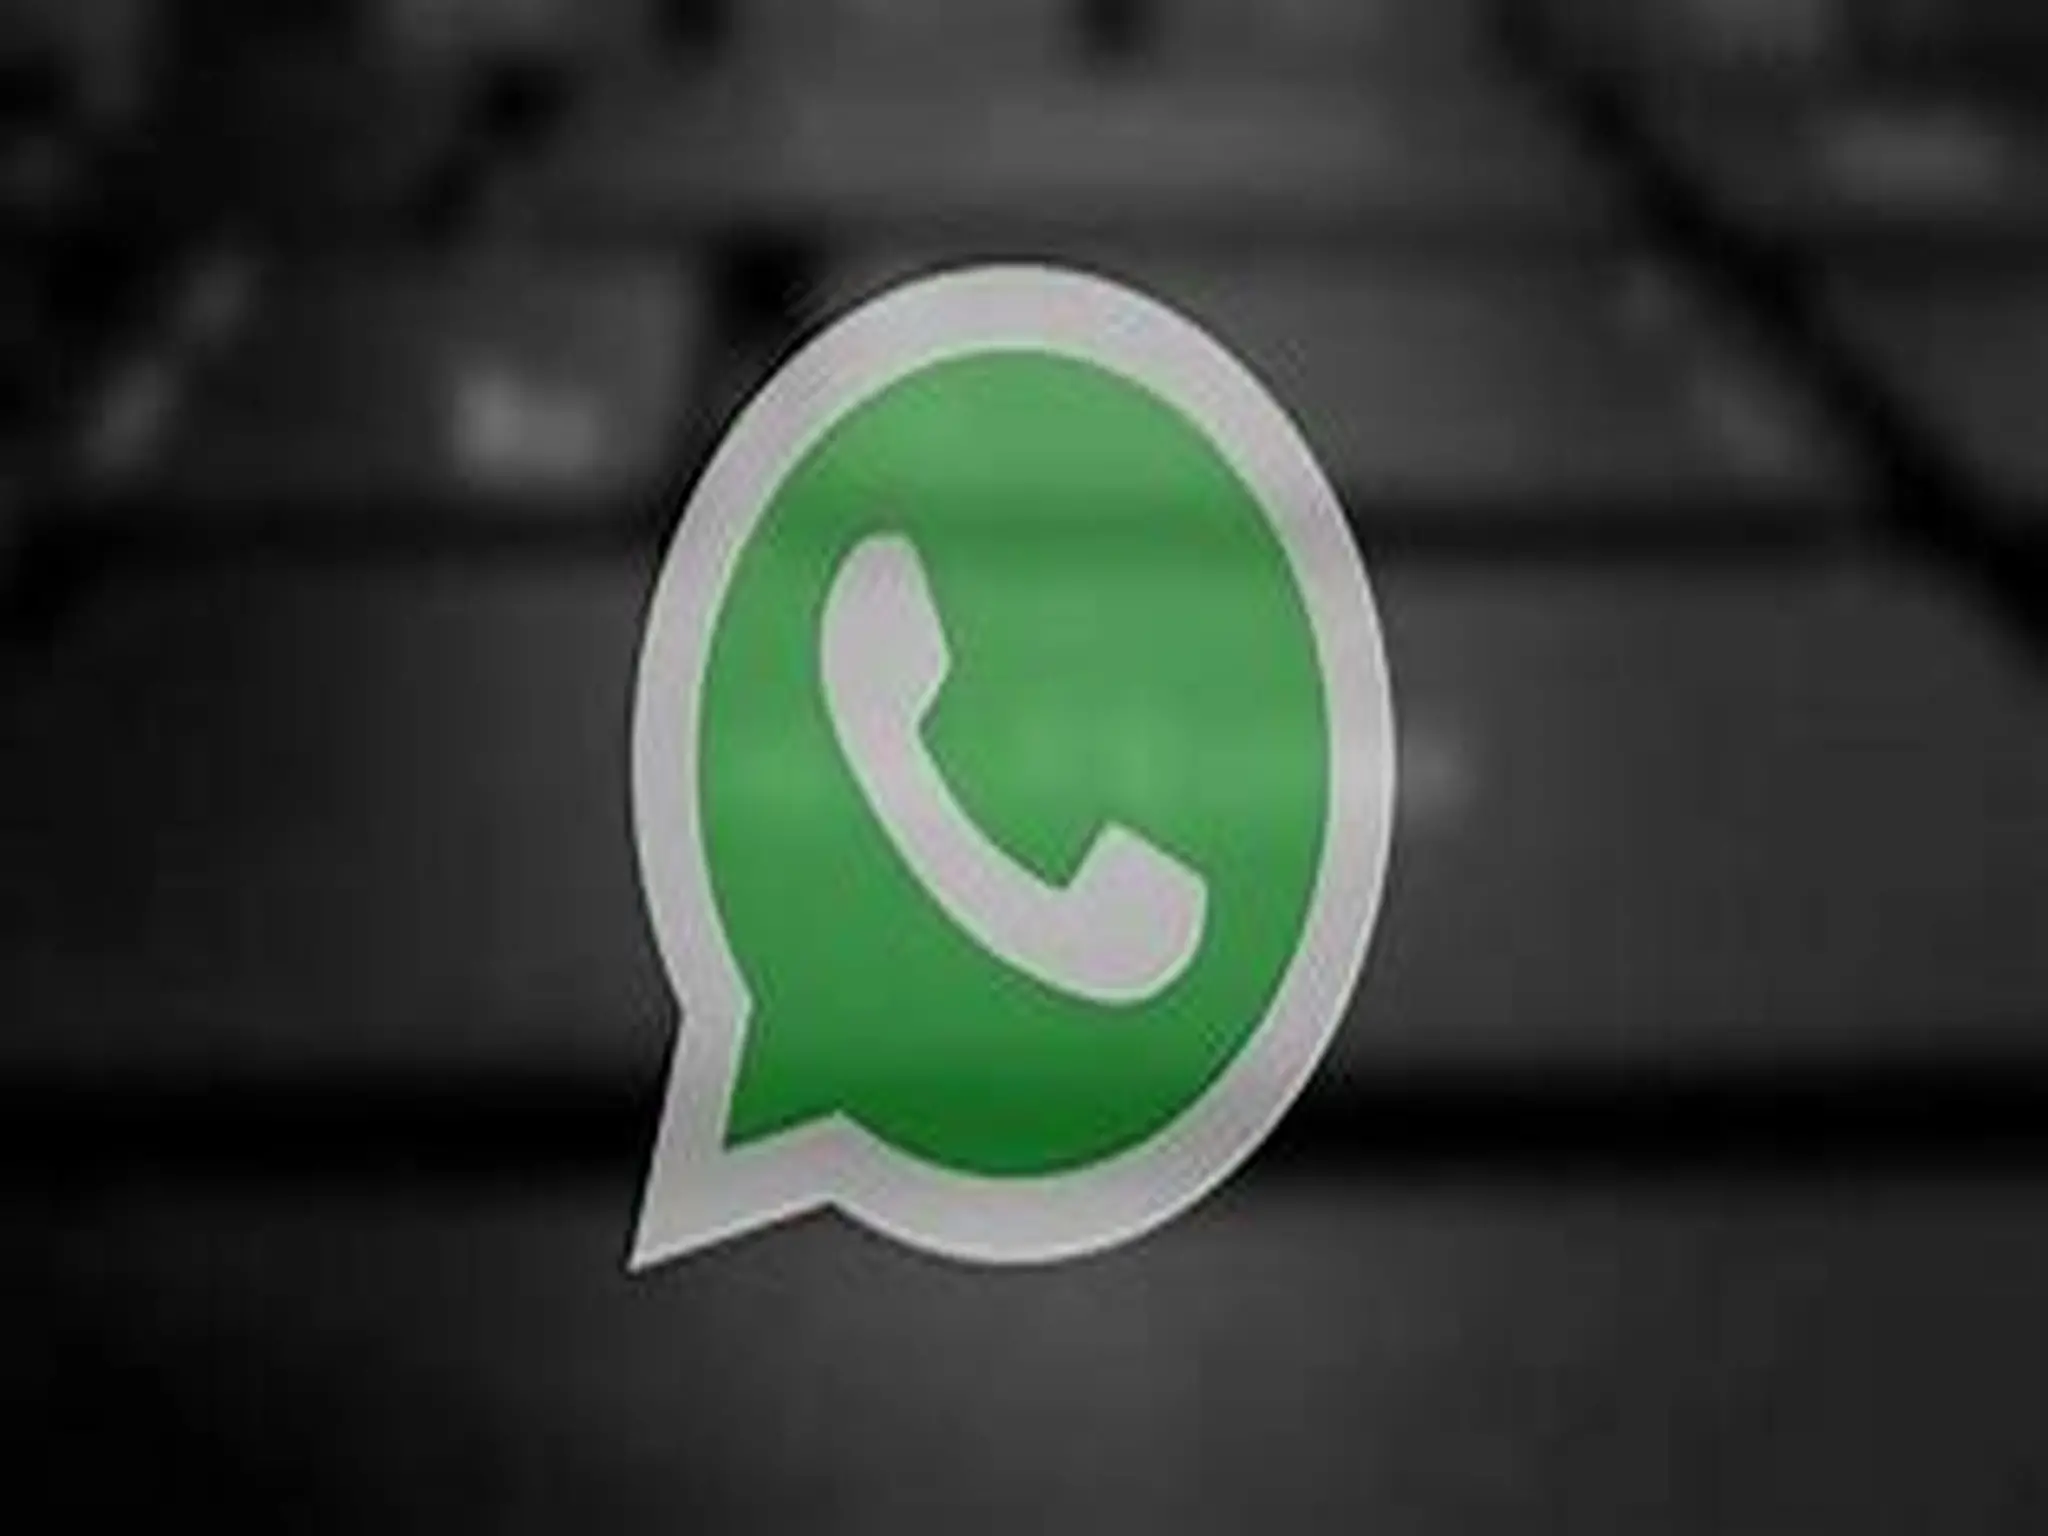 تطبيق “WhatsApp”بإضافة ميزة جديدة تسمح بإستخدام حساب واحد على أكثر من هاتف